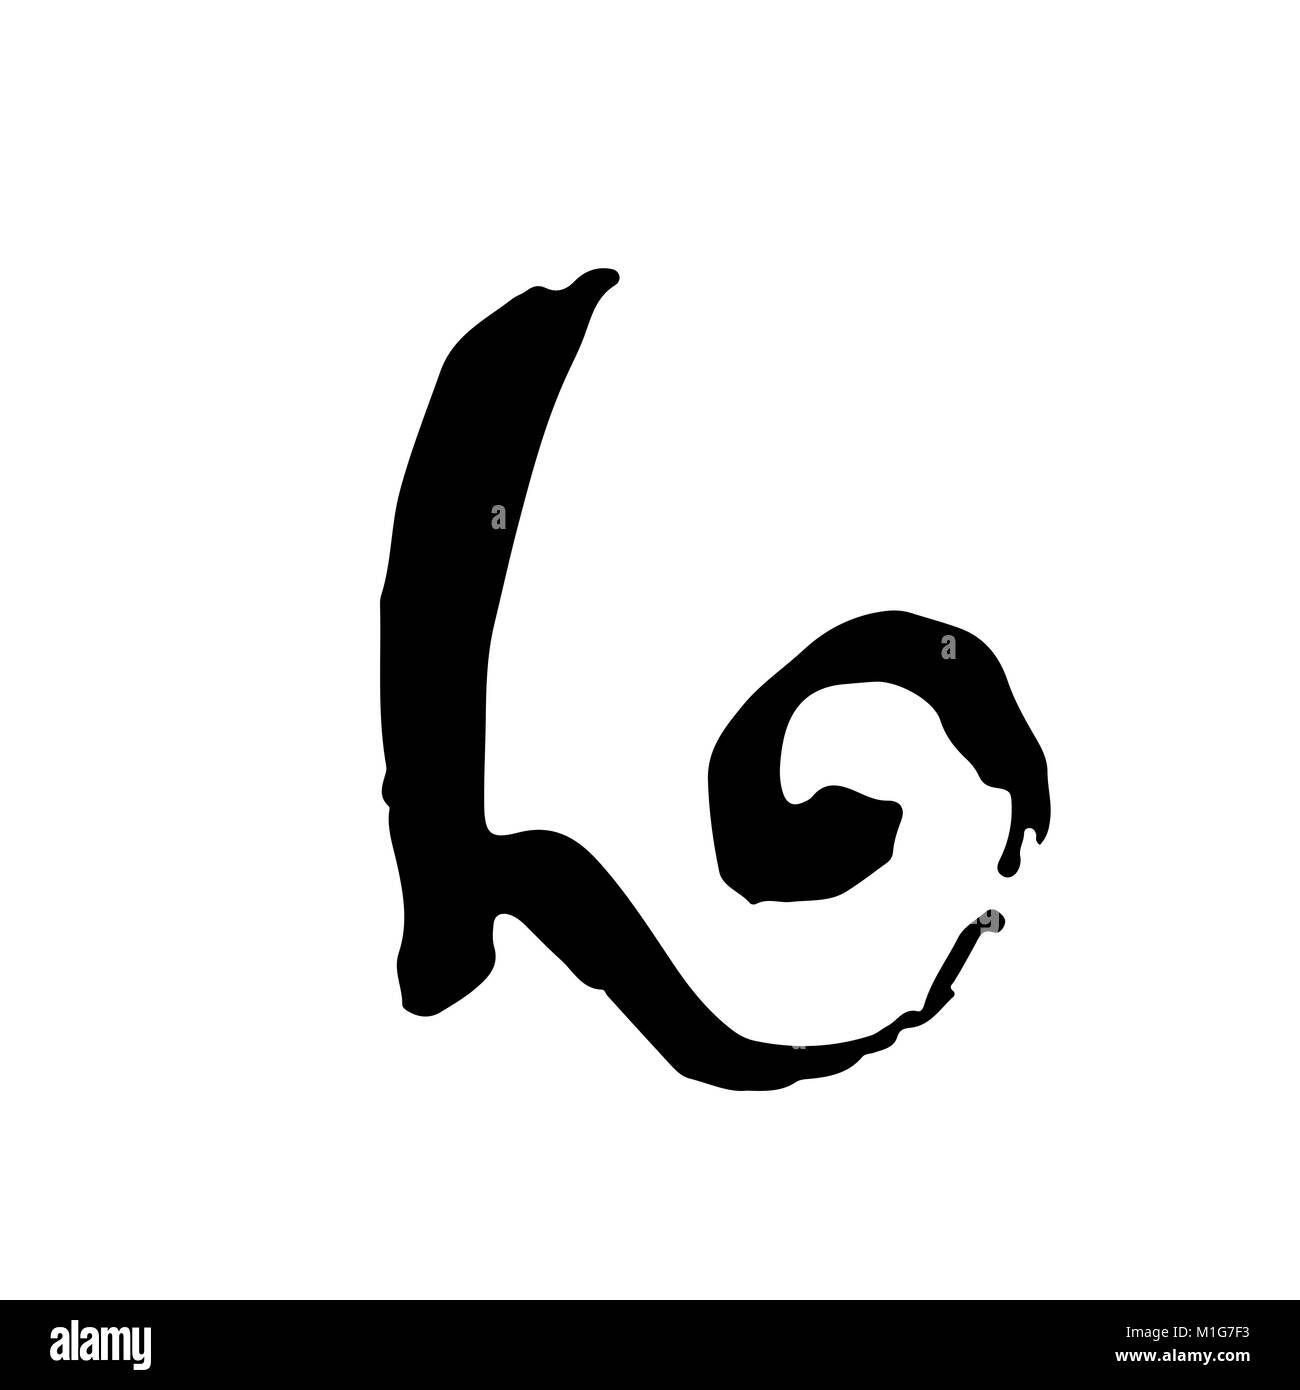 Letter L. Handwritten by dry brush. Rough strokes font. Vector illustration. Grunge style elegant alphabet. Stock Vector